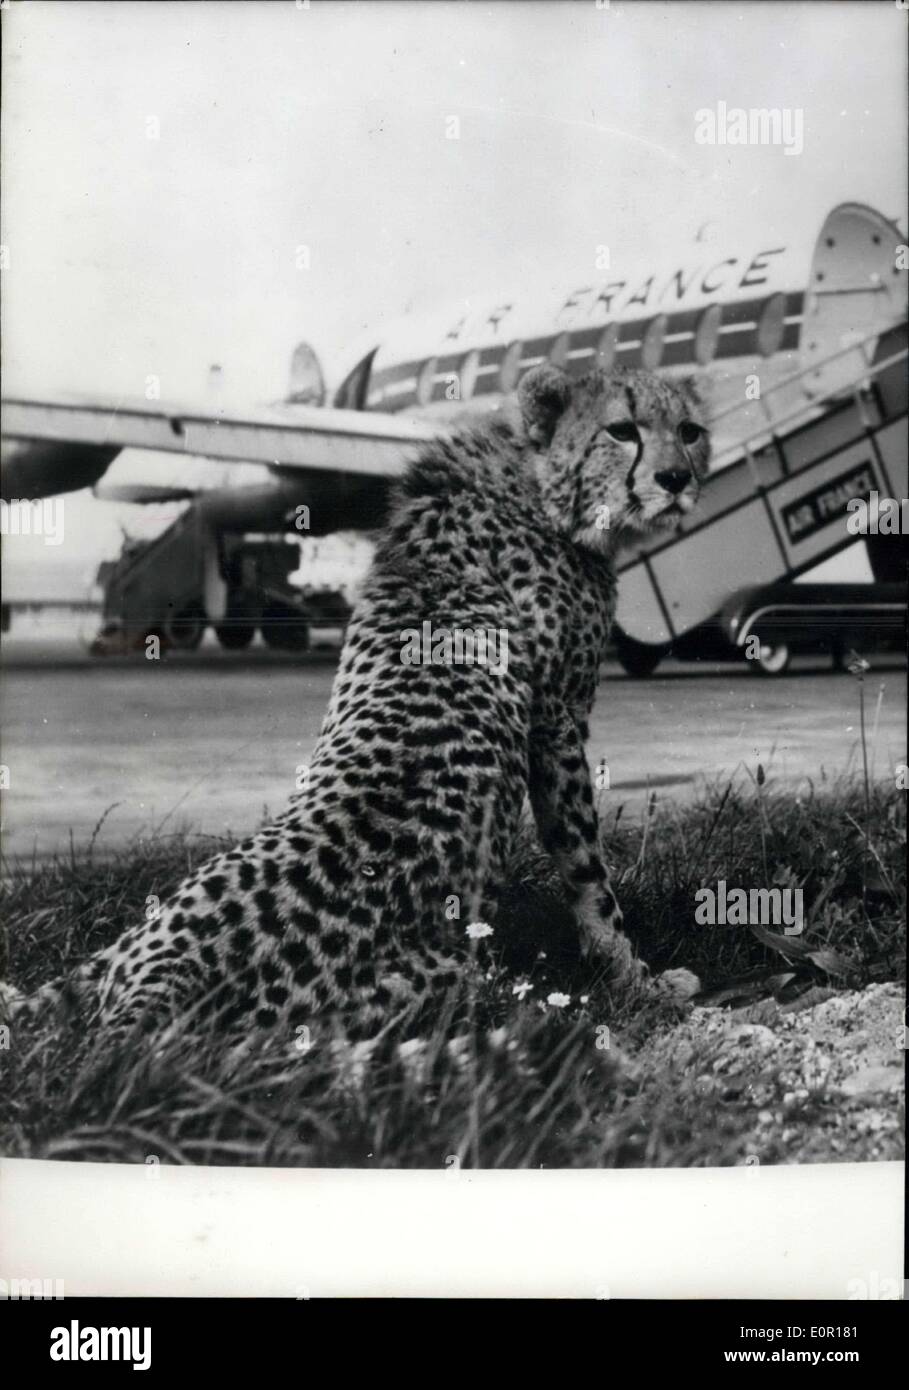 Septembre 11, 1957 - Kenya Guepard vole à New York en passant par Paris. : l'aéroport d'Orly vient d'un passager plus insolite ce matin, un Kenya Guepard qui arrive à Paris et a été réexpédié à New York. Photo montre le Guepard en attente d'être emmené à bord d'un avion Airfrance Banque D'Images